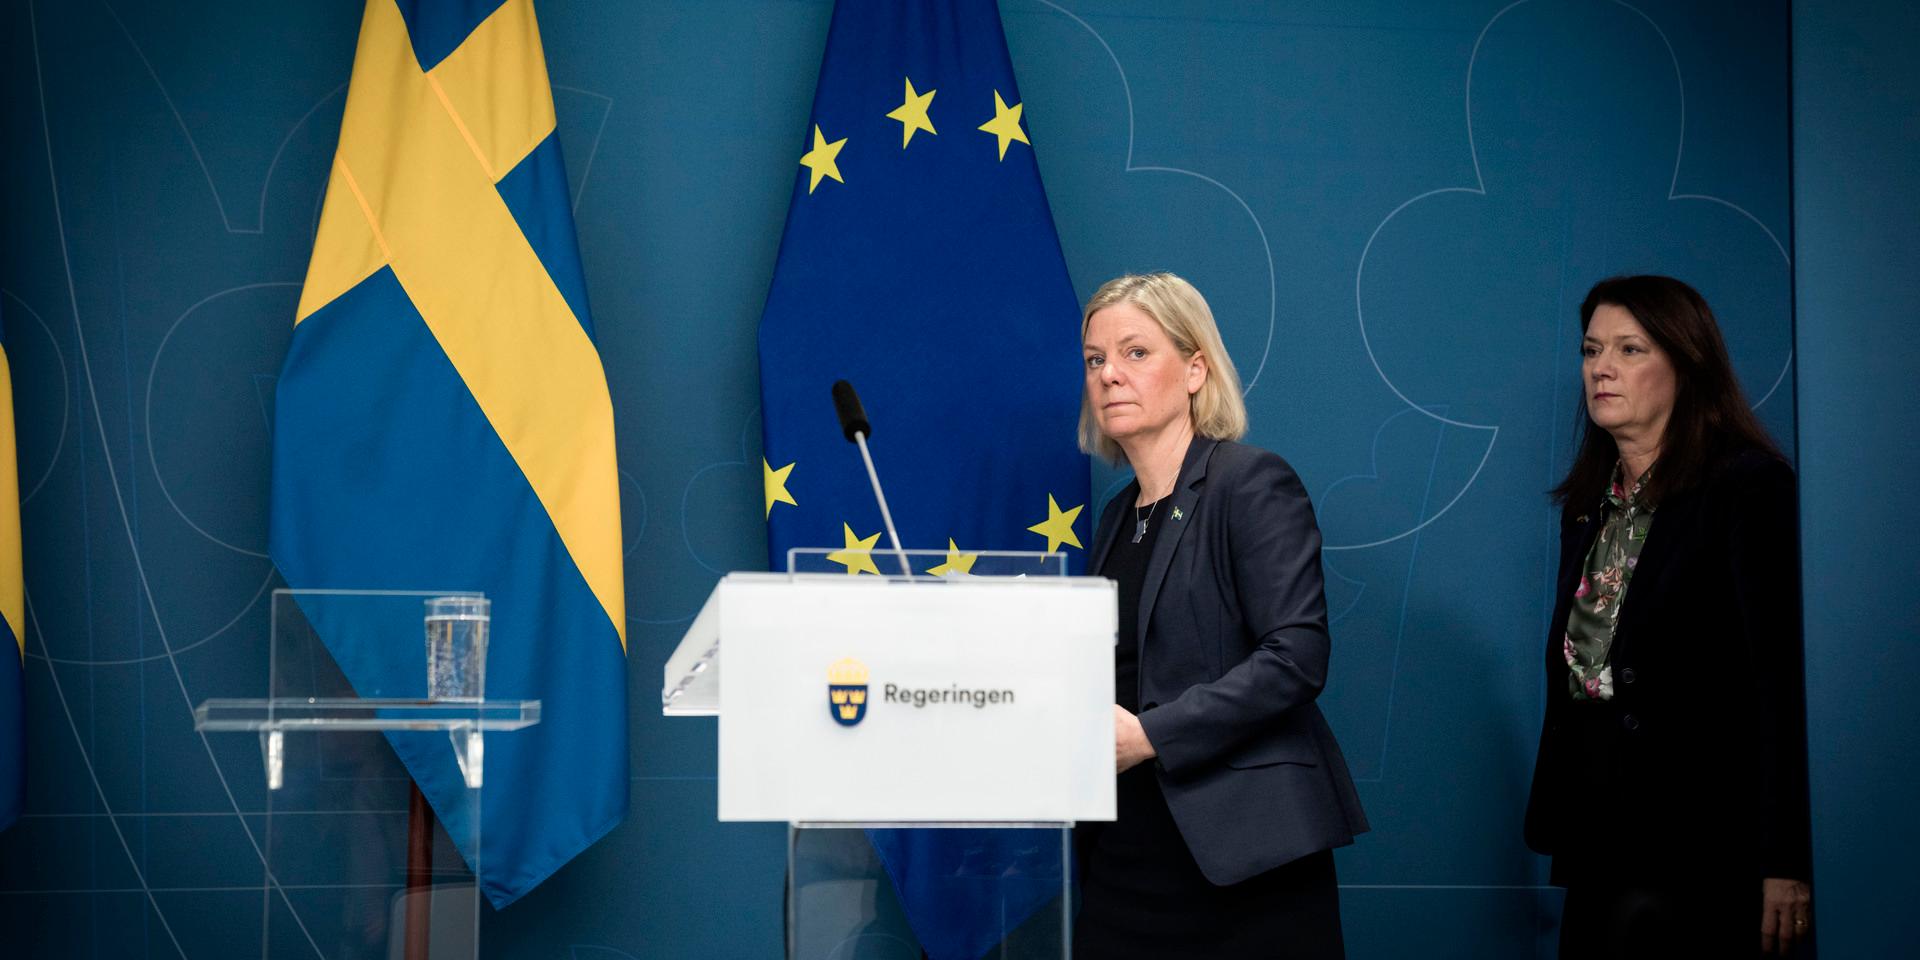 Regeringen var tvungen att förhandla med Turkiet för att få Sverige in i Nato.